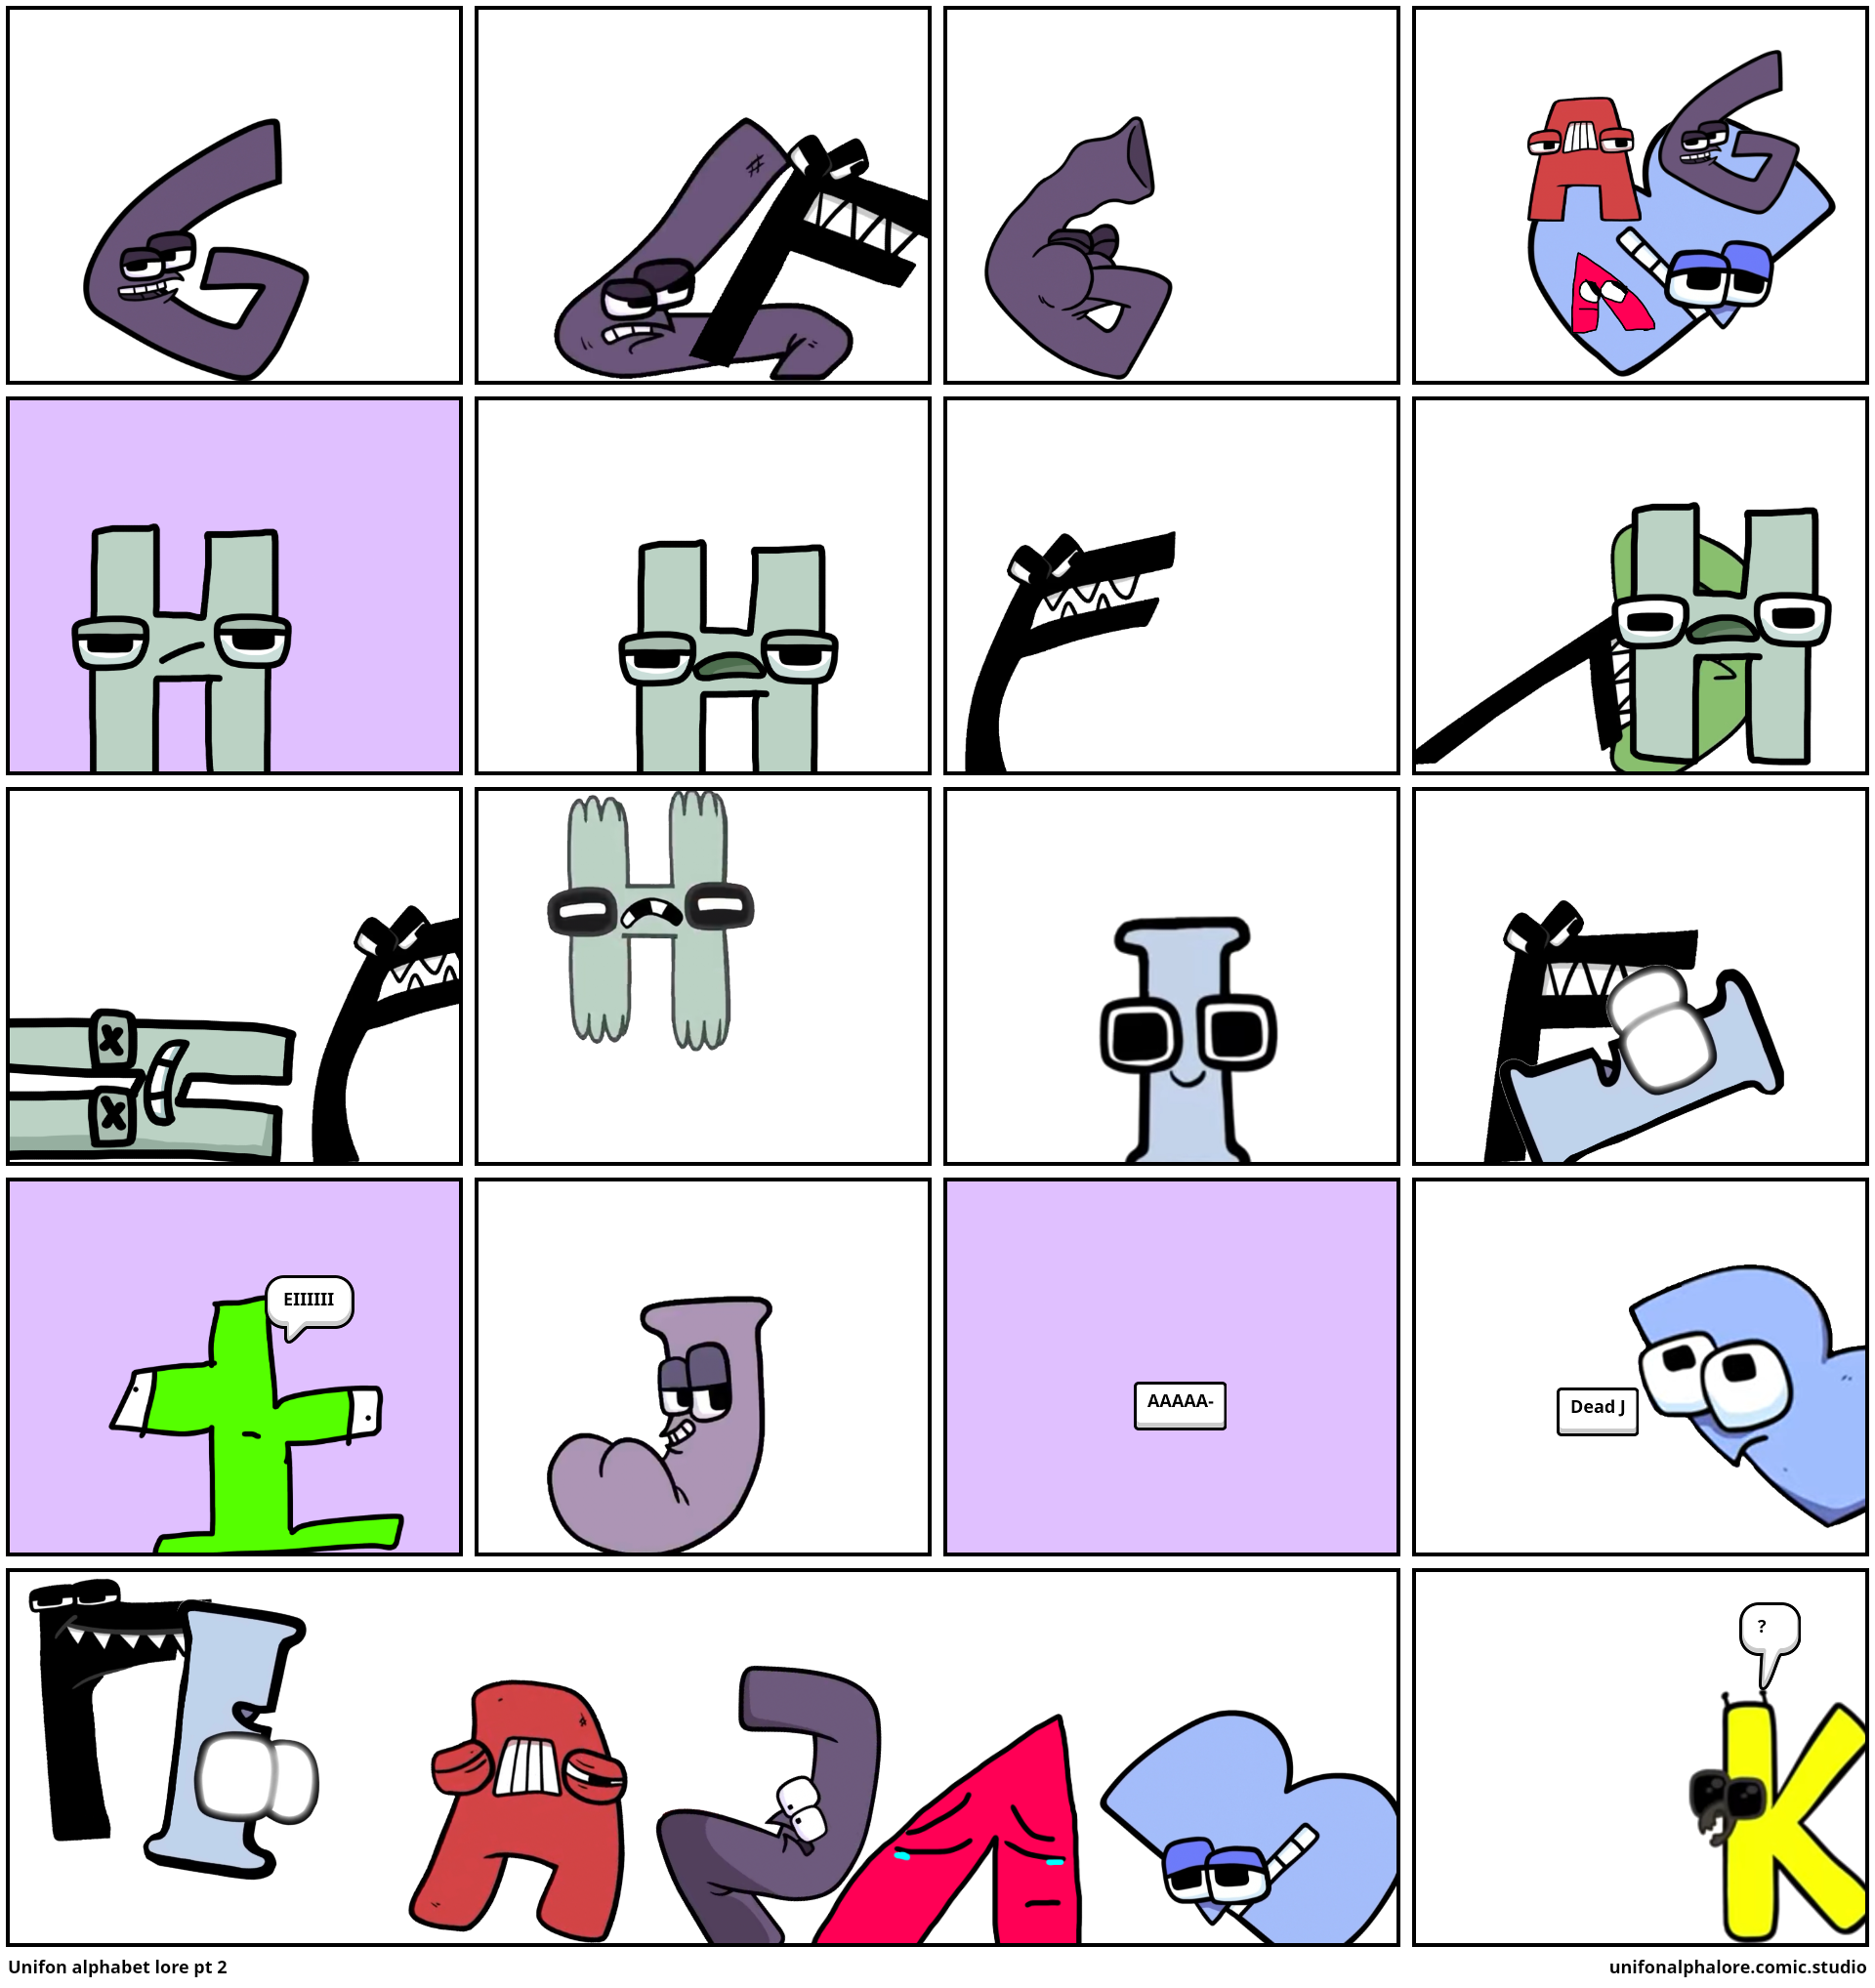 Unifon alphabet lore pt 2